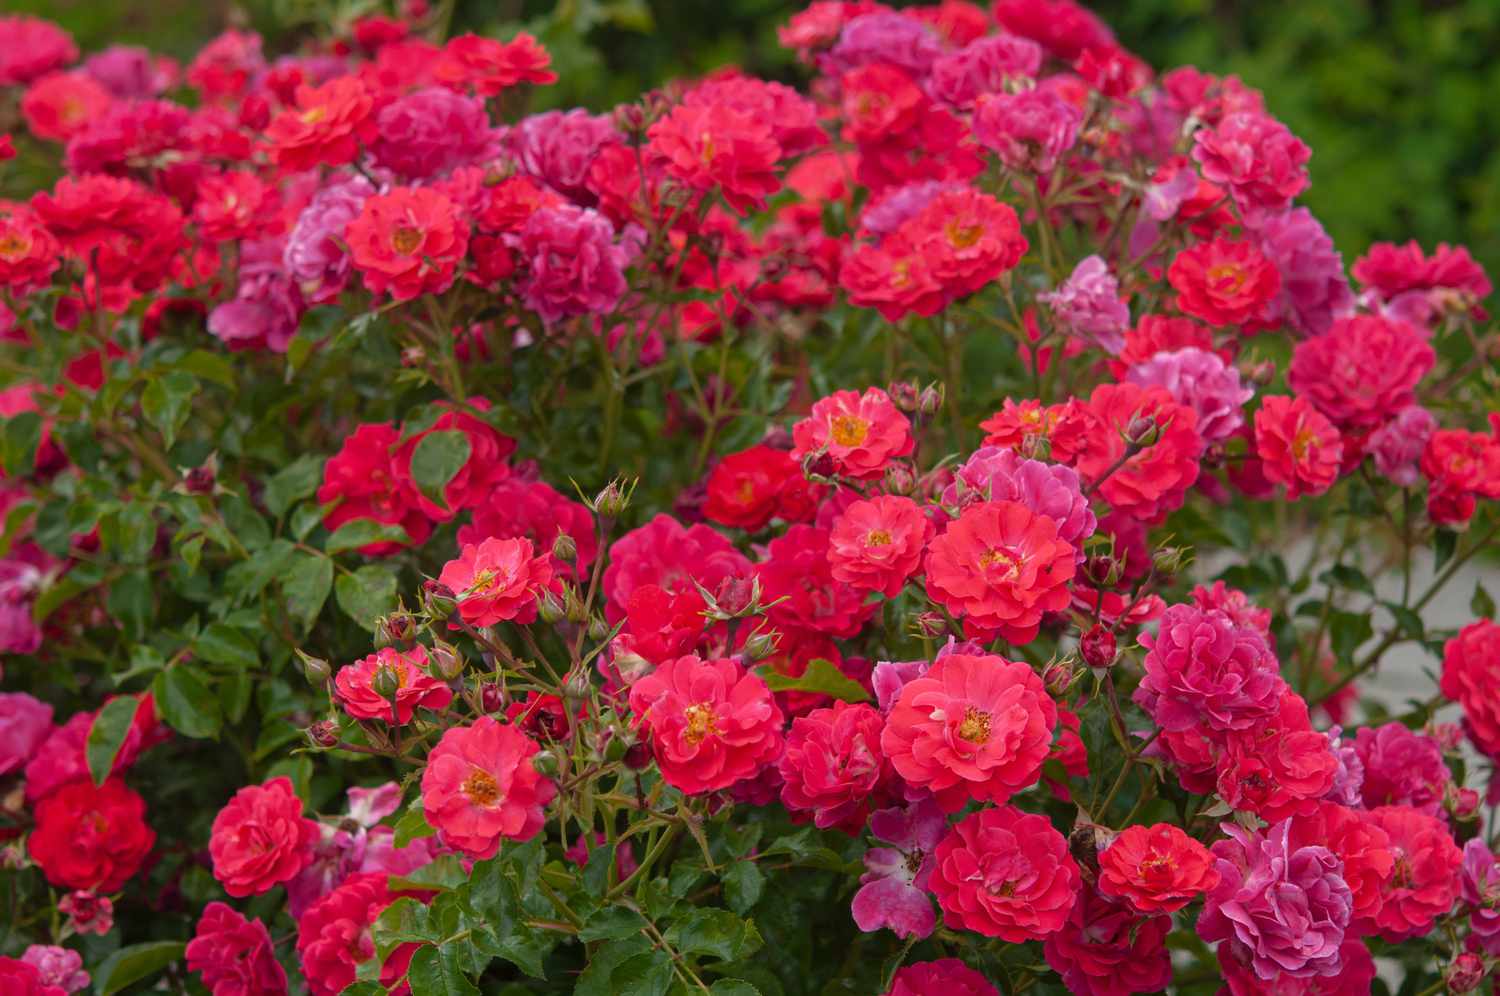 Arbuste de rose avec des fleurs de rose rose vif entourées de feuilles